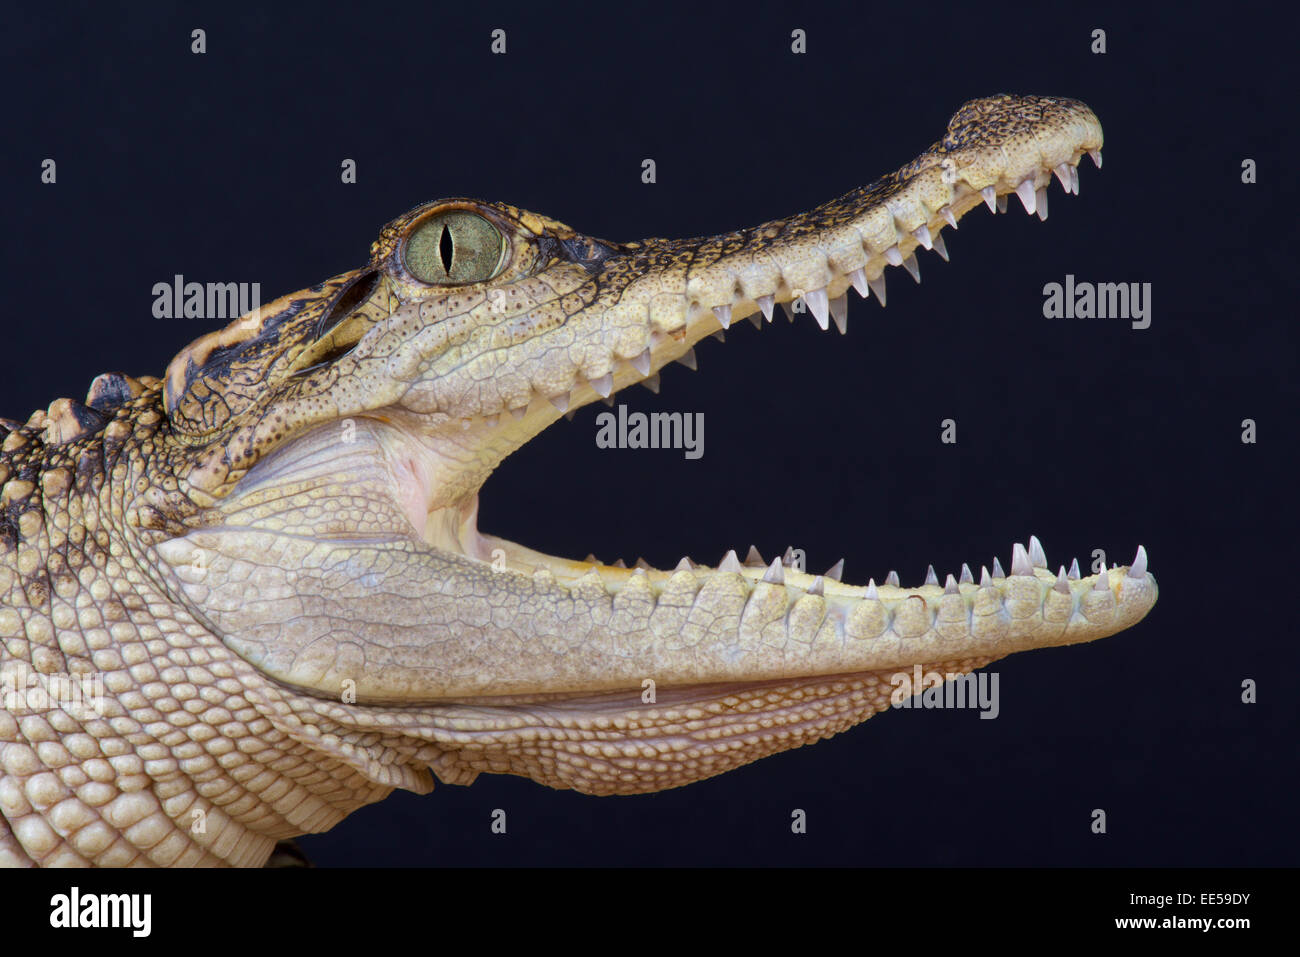 Siamese crocodile / Crocodylus siamensis Stock Photo